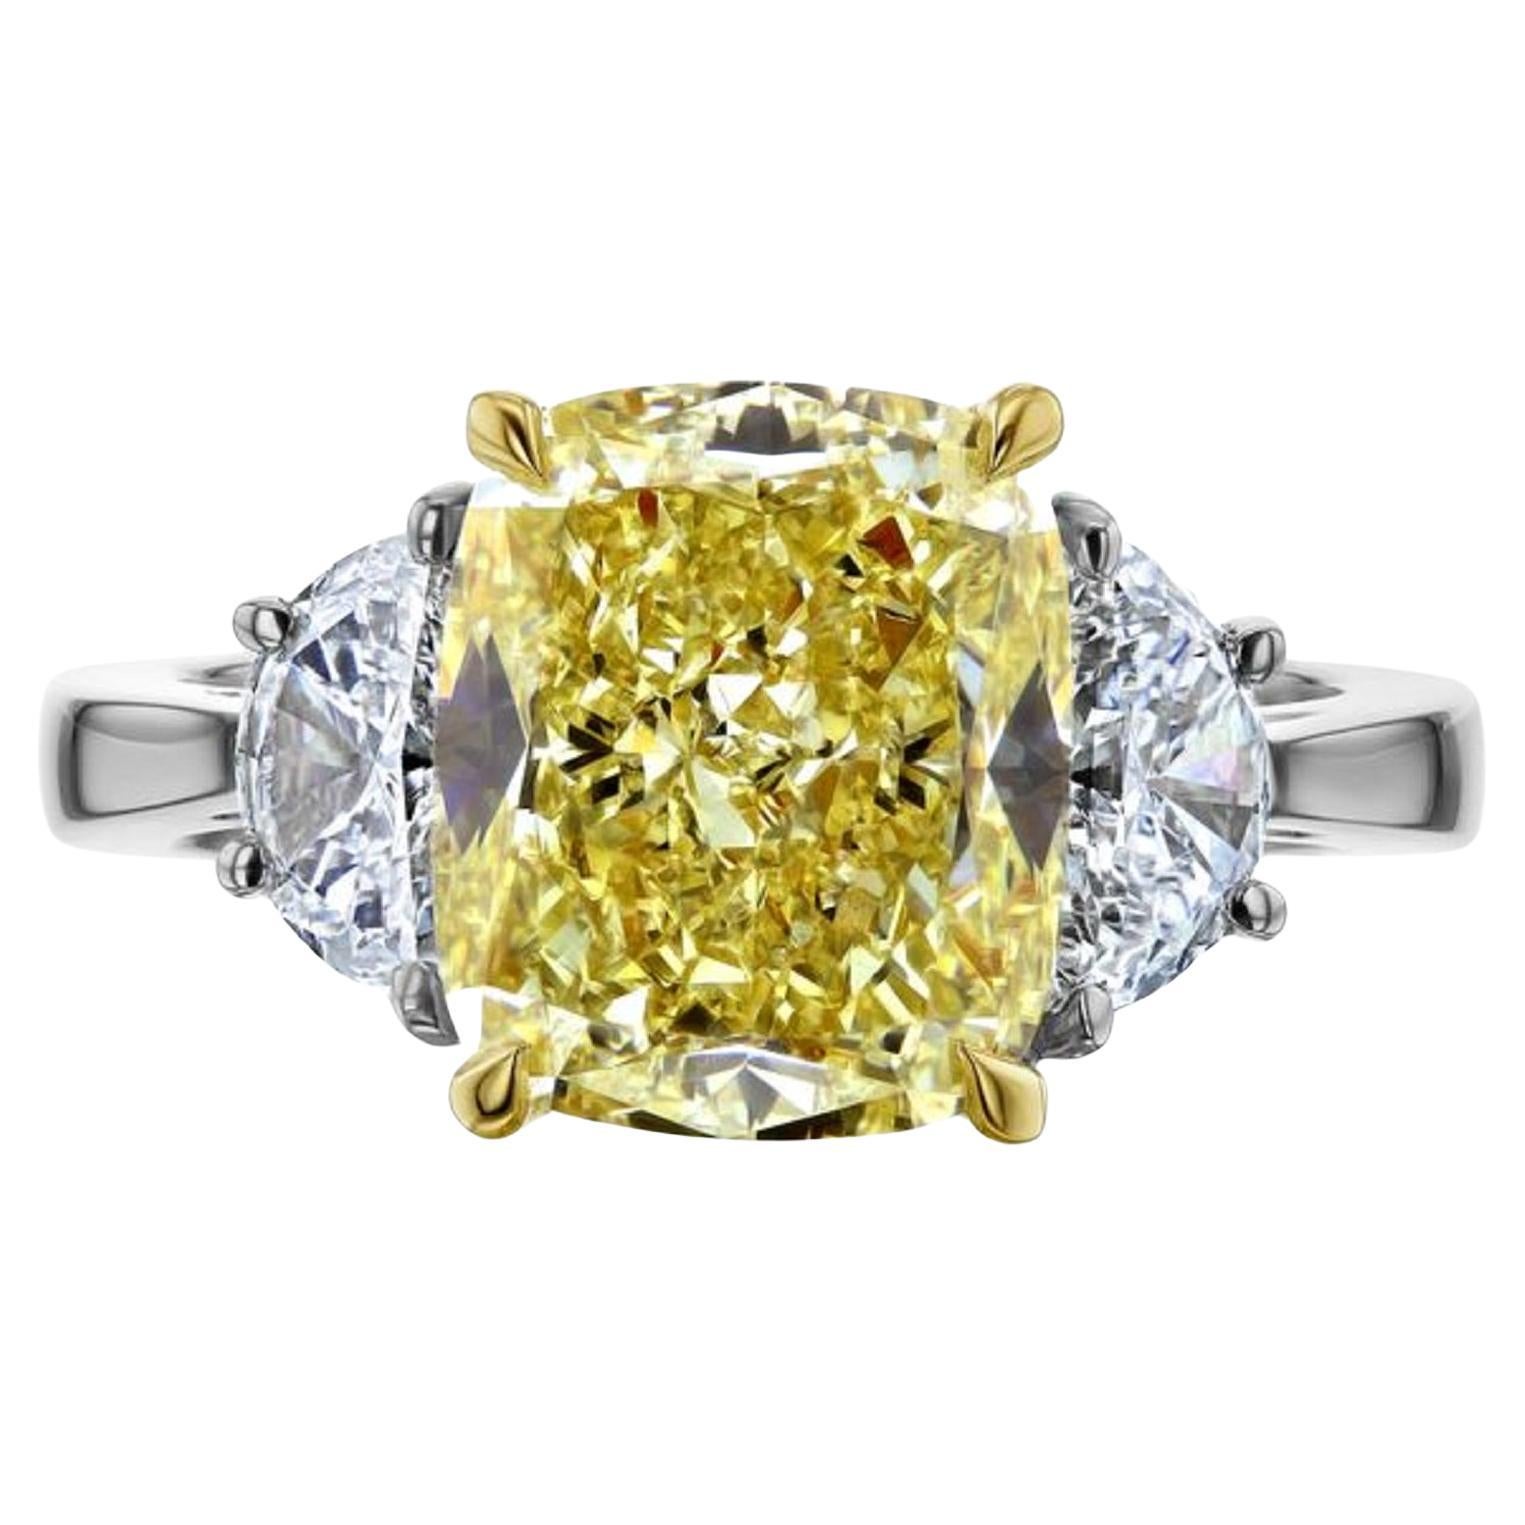 GIA Certified 5 Carat Fancy Yellow Cushion Cut Diamond Ring